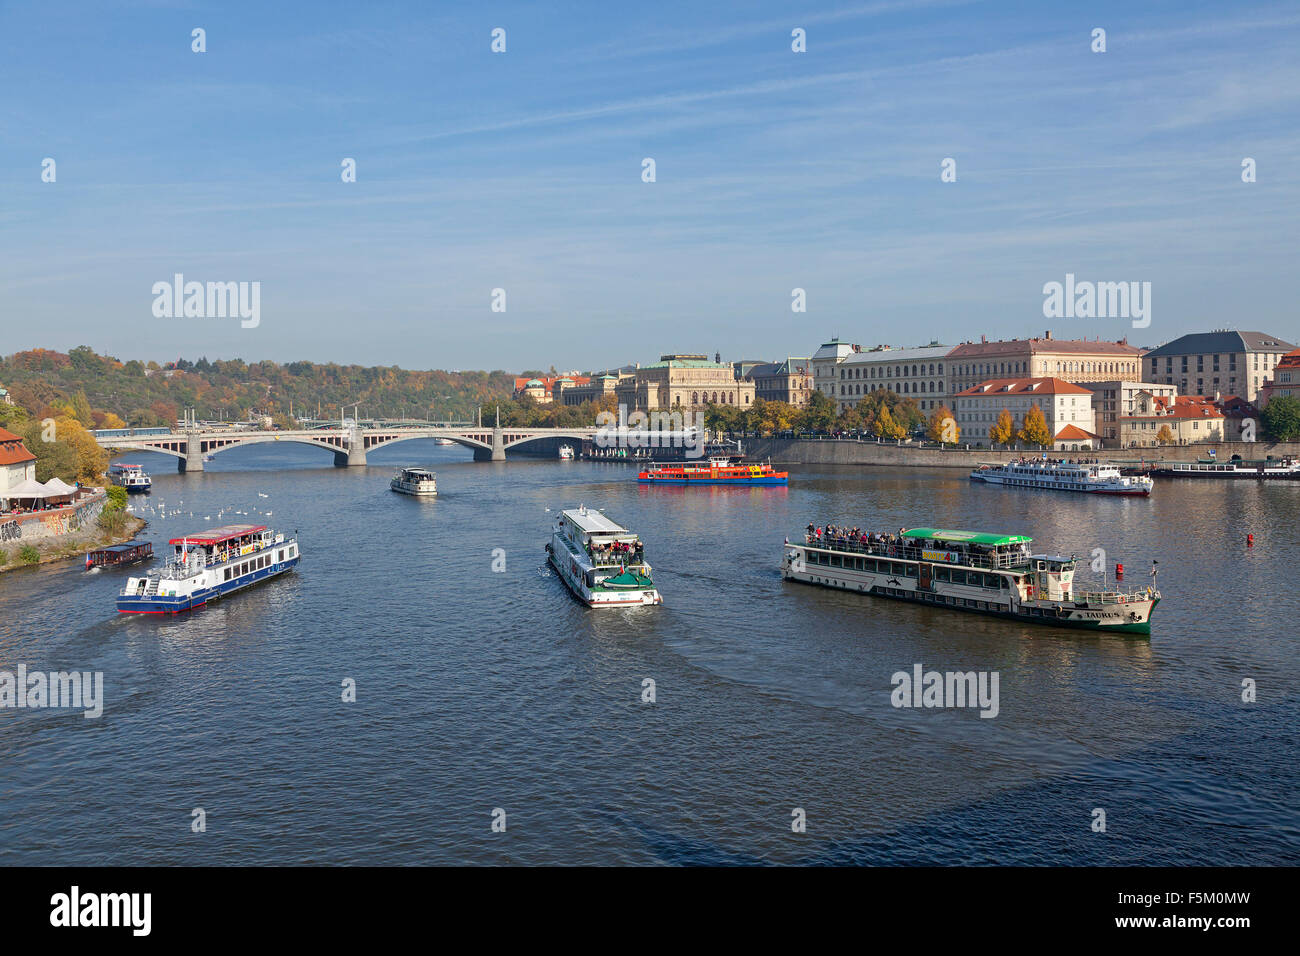 excursion boats, Manes Bridge, River Vltava, Prague, Czech Republic Stock Photo